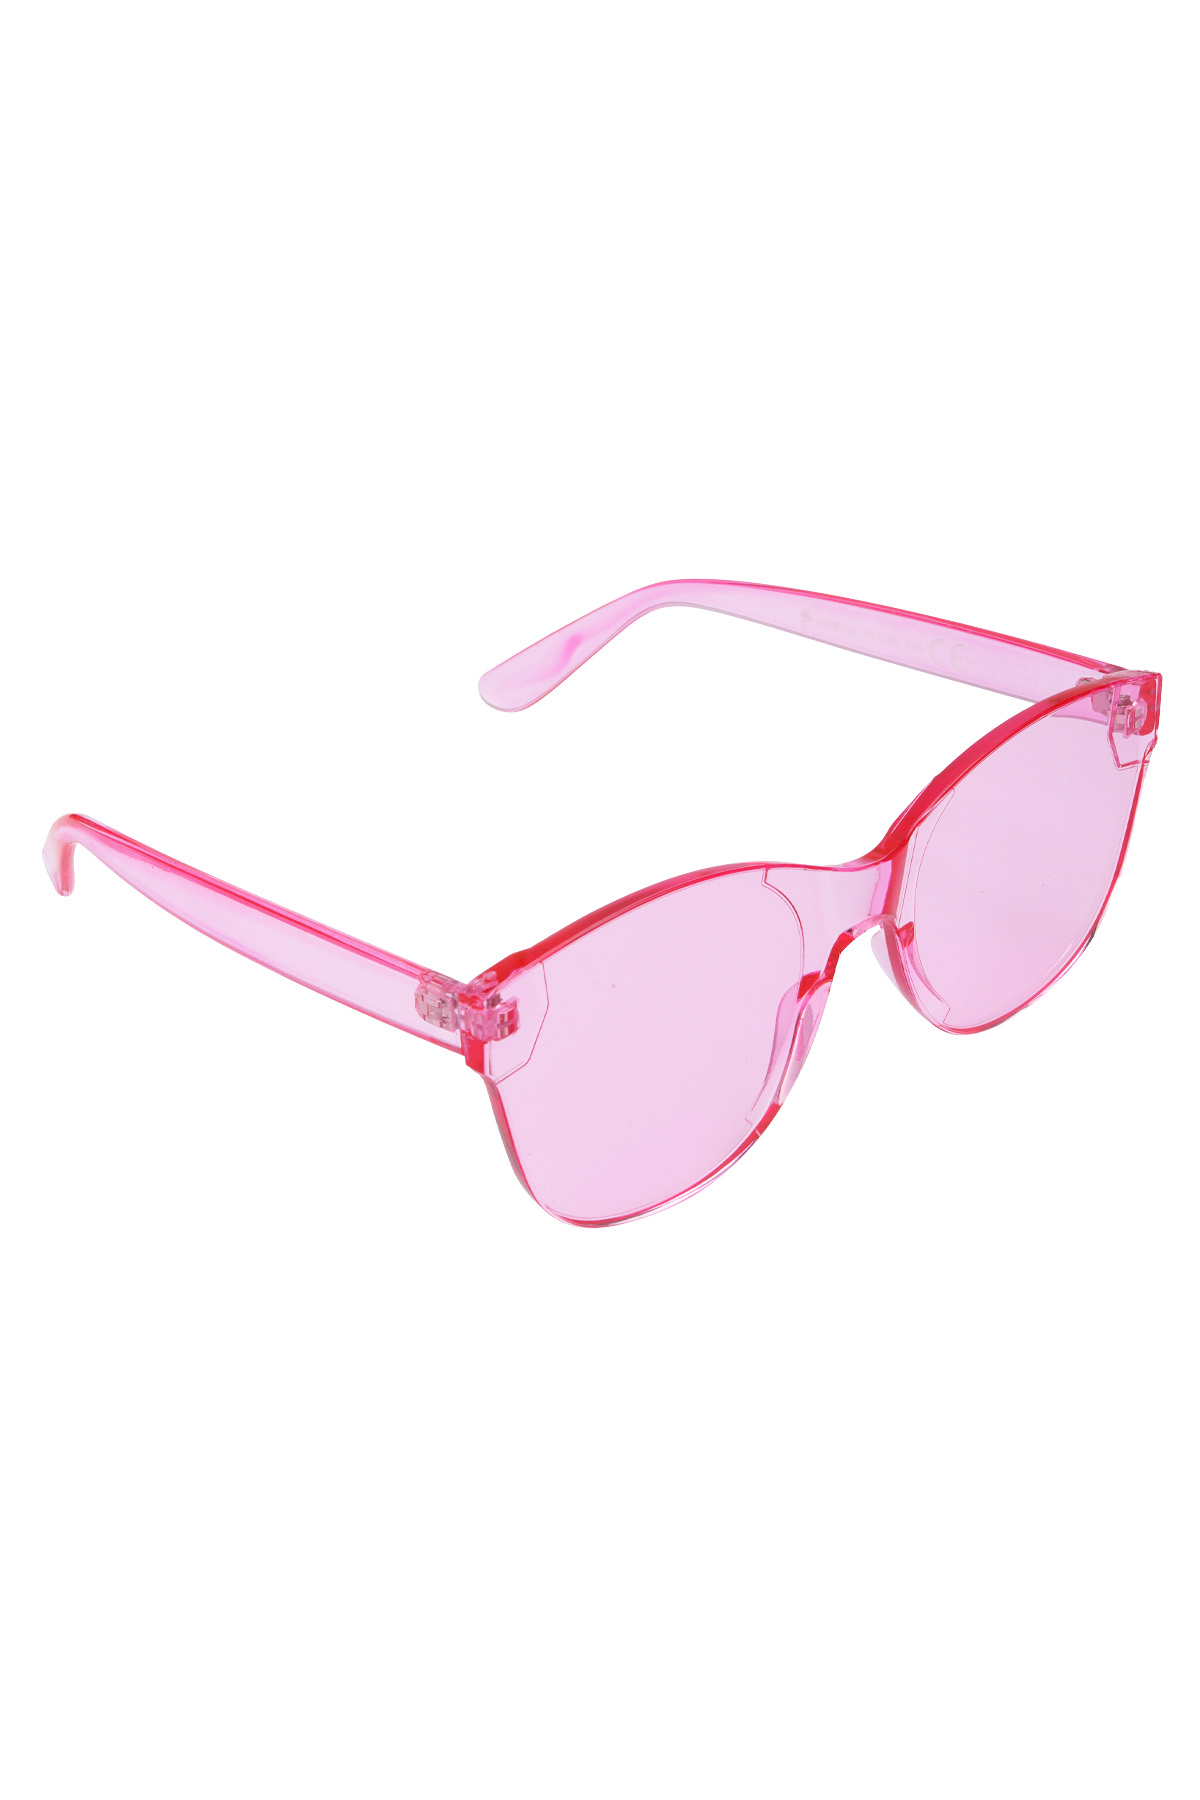 Einfarbige, trendige Sonnenbrille - Pink